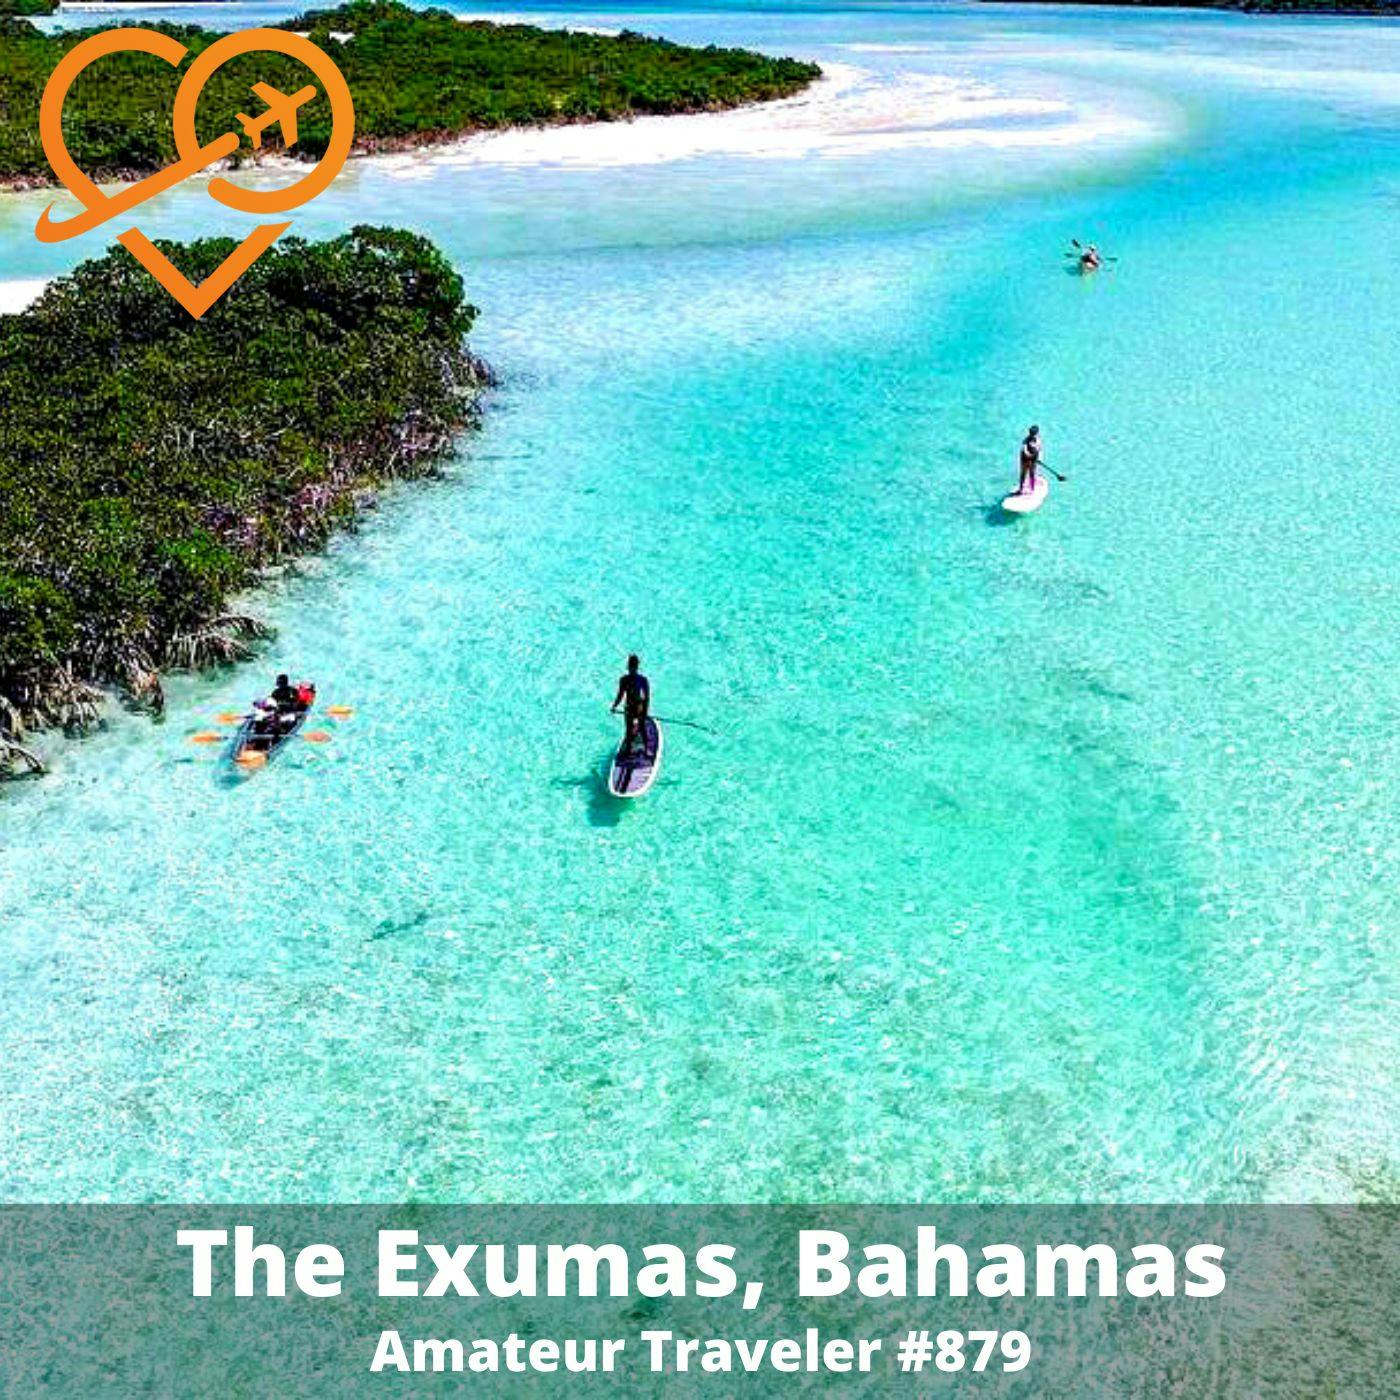 AT#879 - Travel to the Exumas, Bahamas